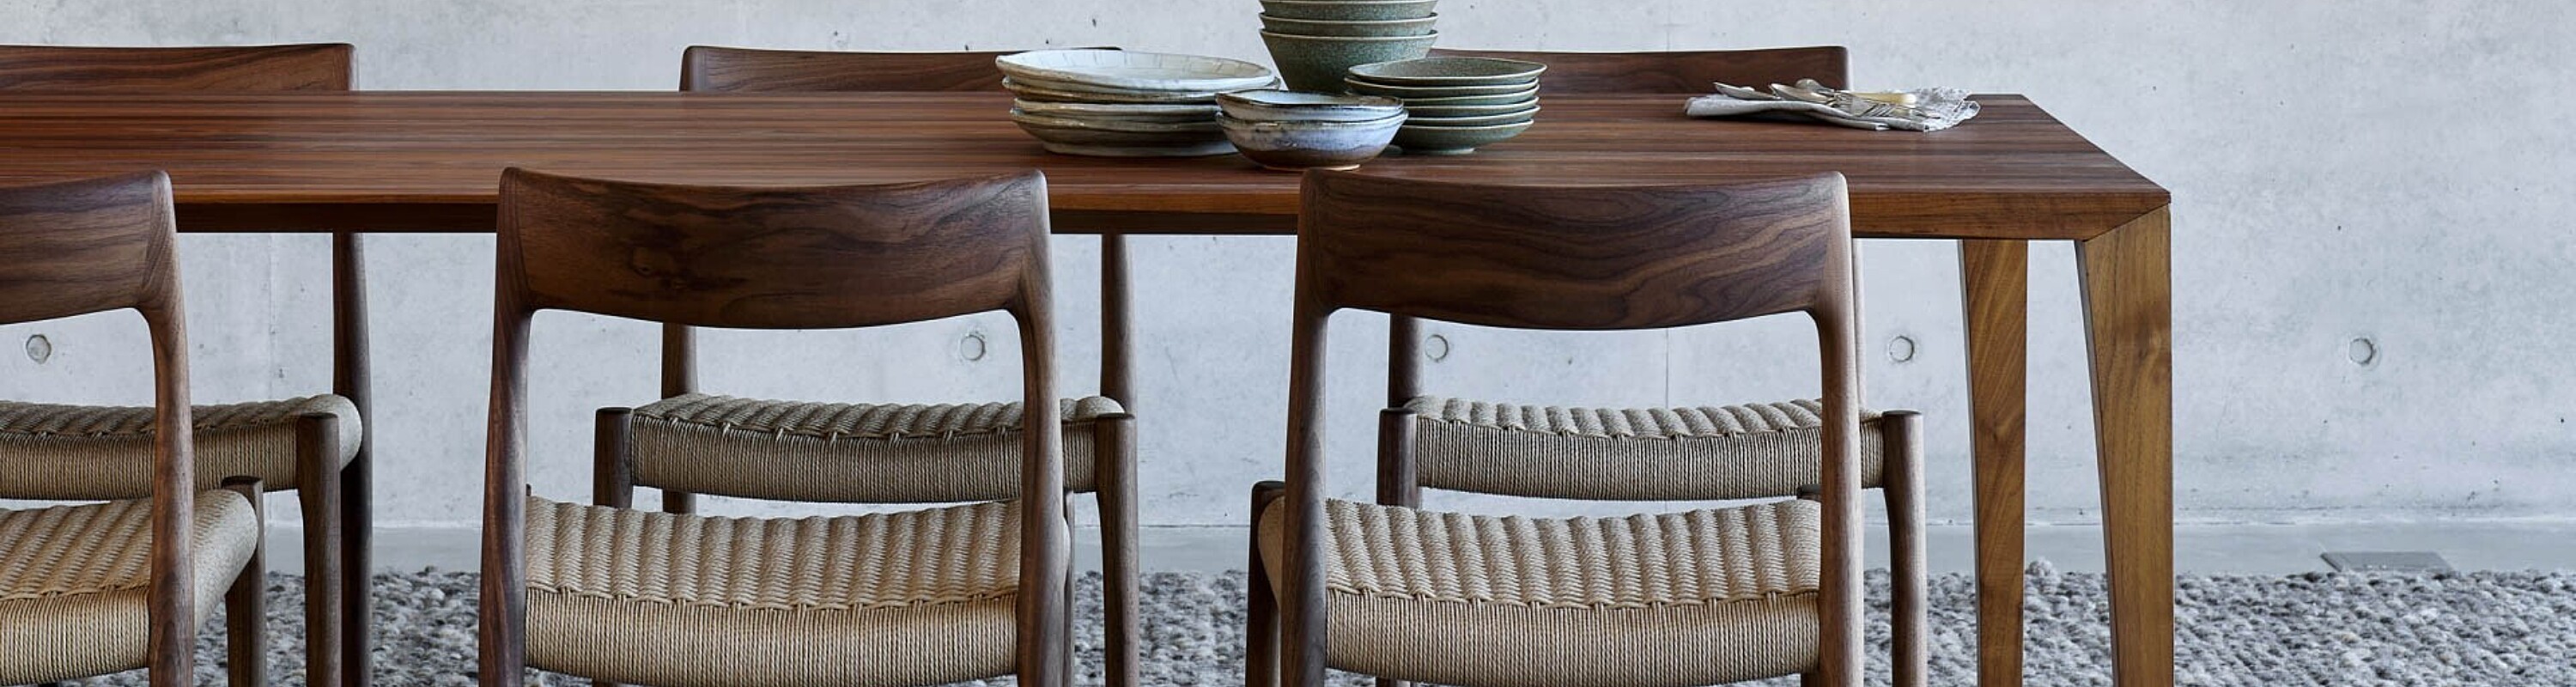 Moller stoelen, armstoelen in massief hout - Deens design